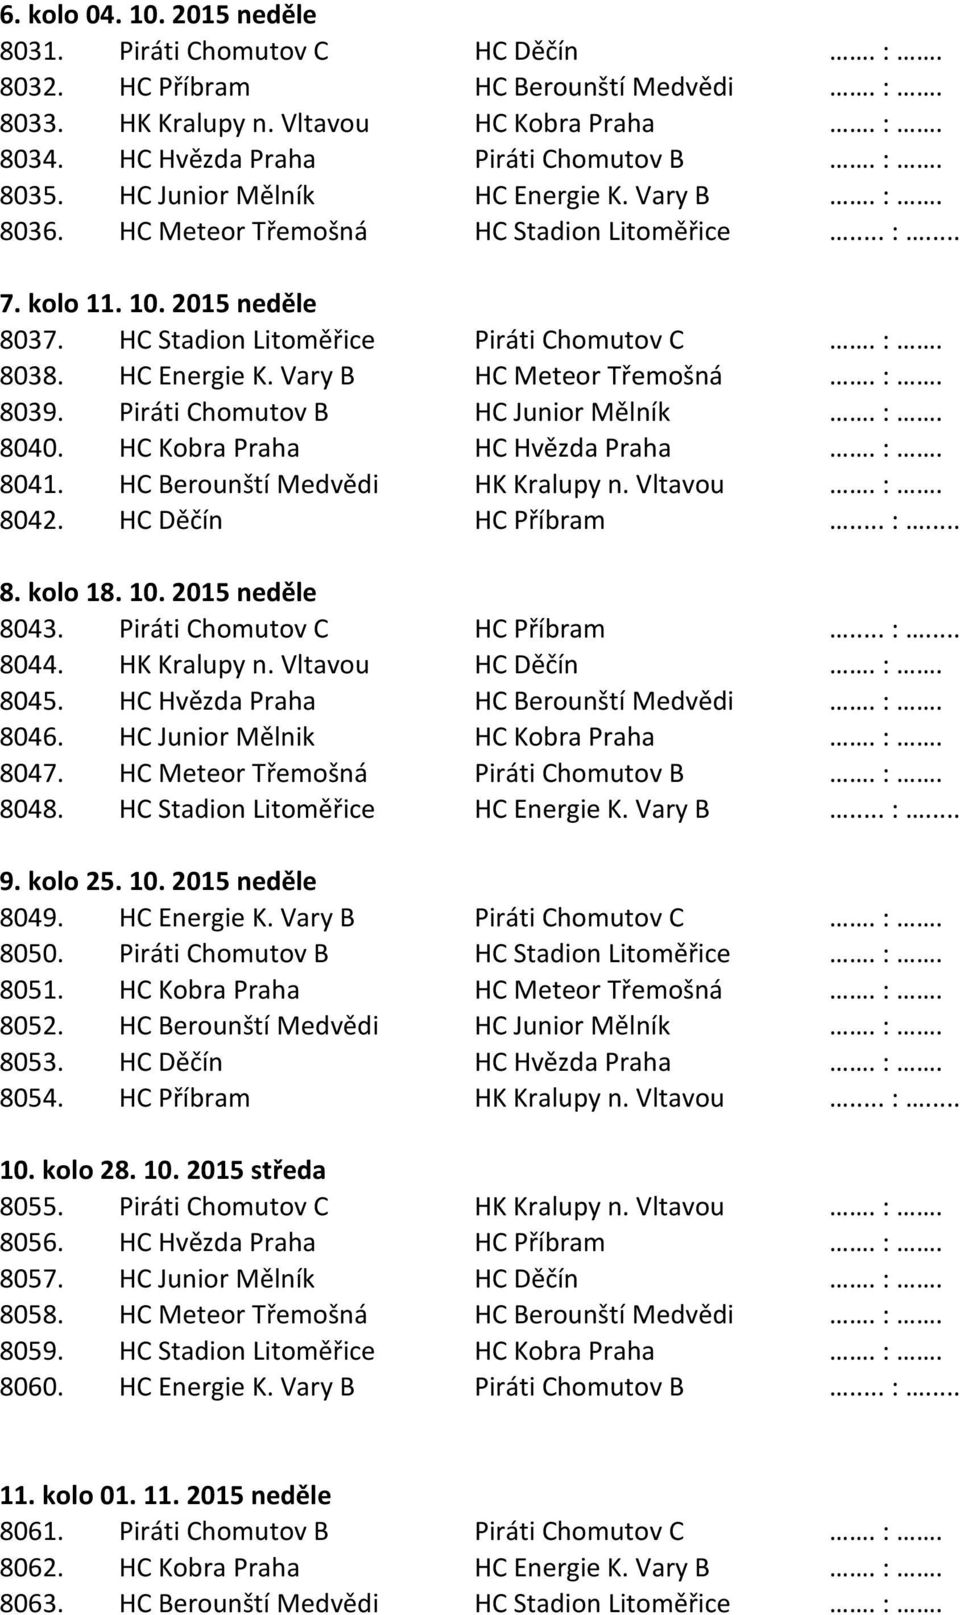 :. 8039. Piráti Chomutov B HC Junior Mělník. :. 8040. HC Kobra Praha HC Hvězda Praha. :. 8041. HC Berounští Medvědi HK Kralupy n. Vltavou. :. 8042. HC Děčín HC Příbram... :... 8. kolo 18. 10.